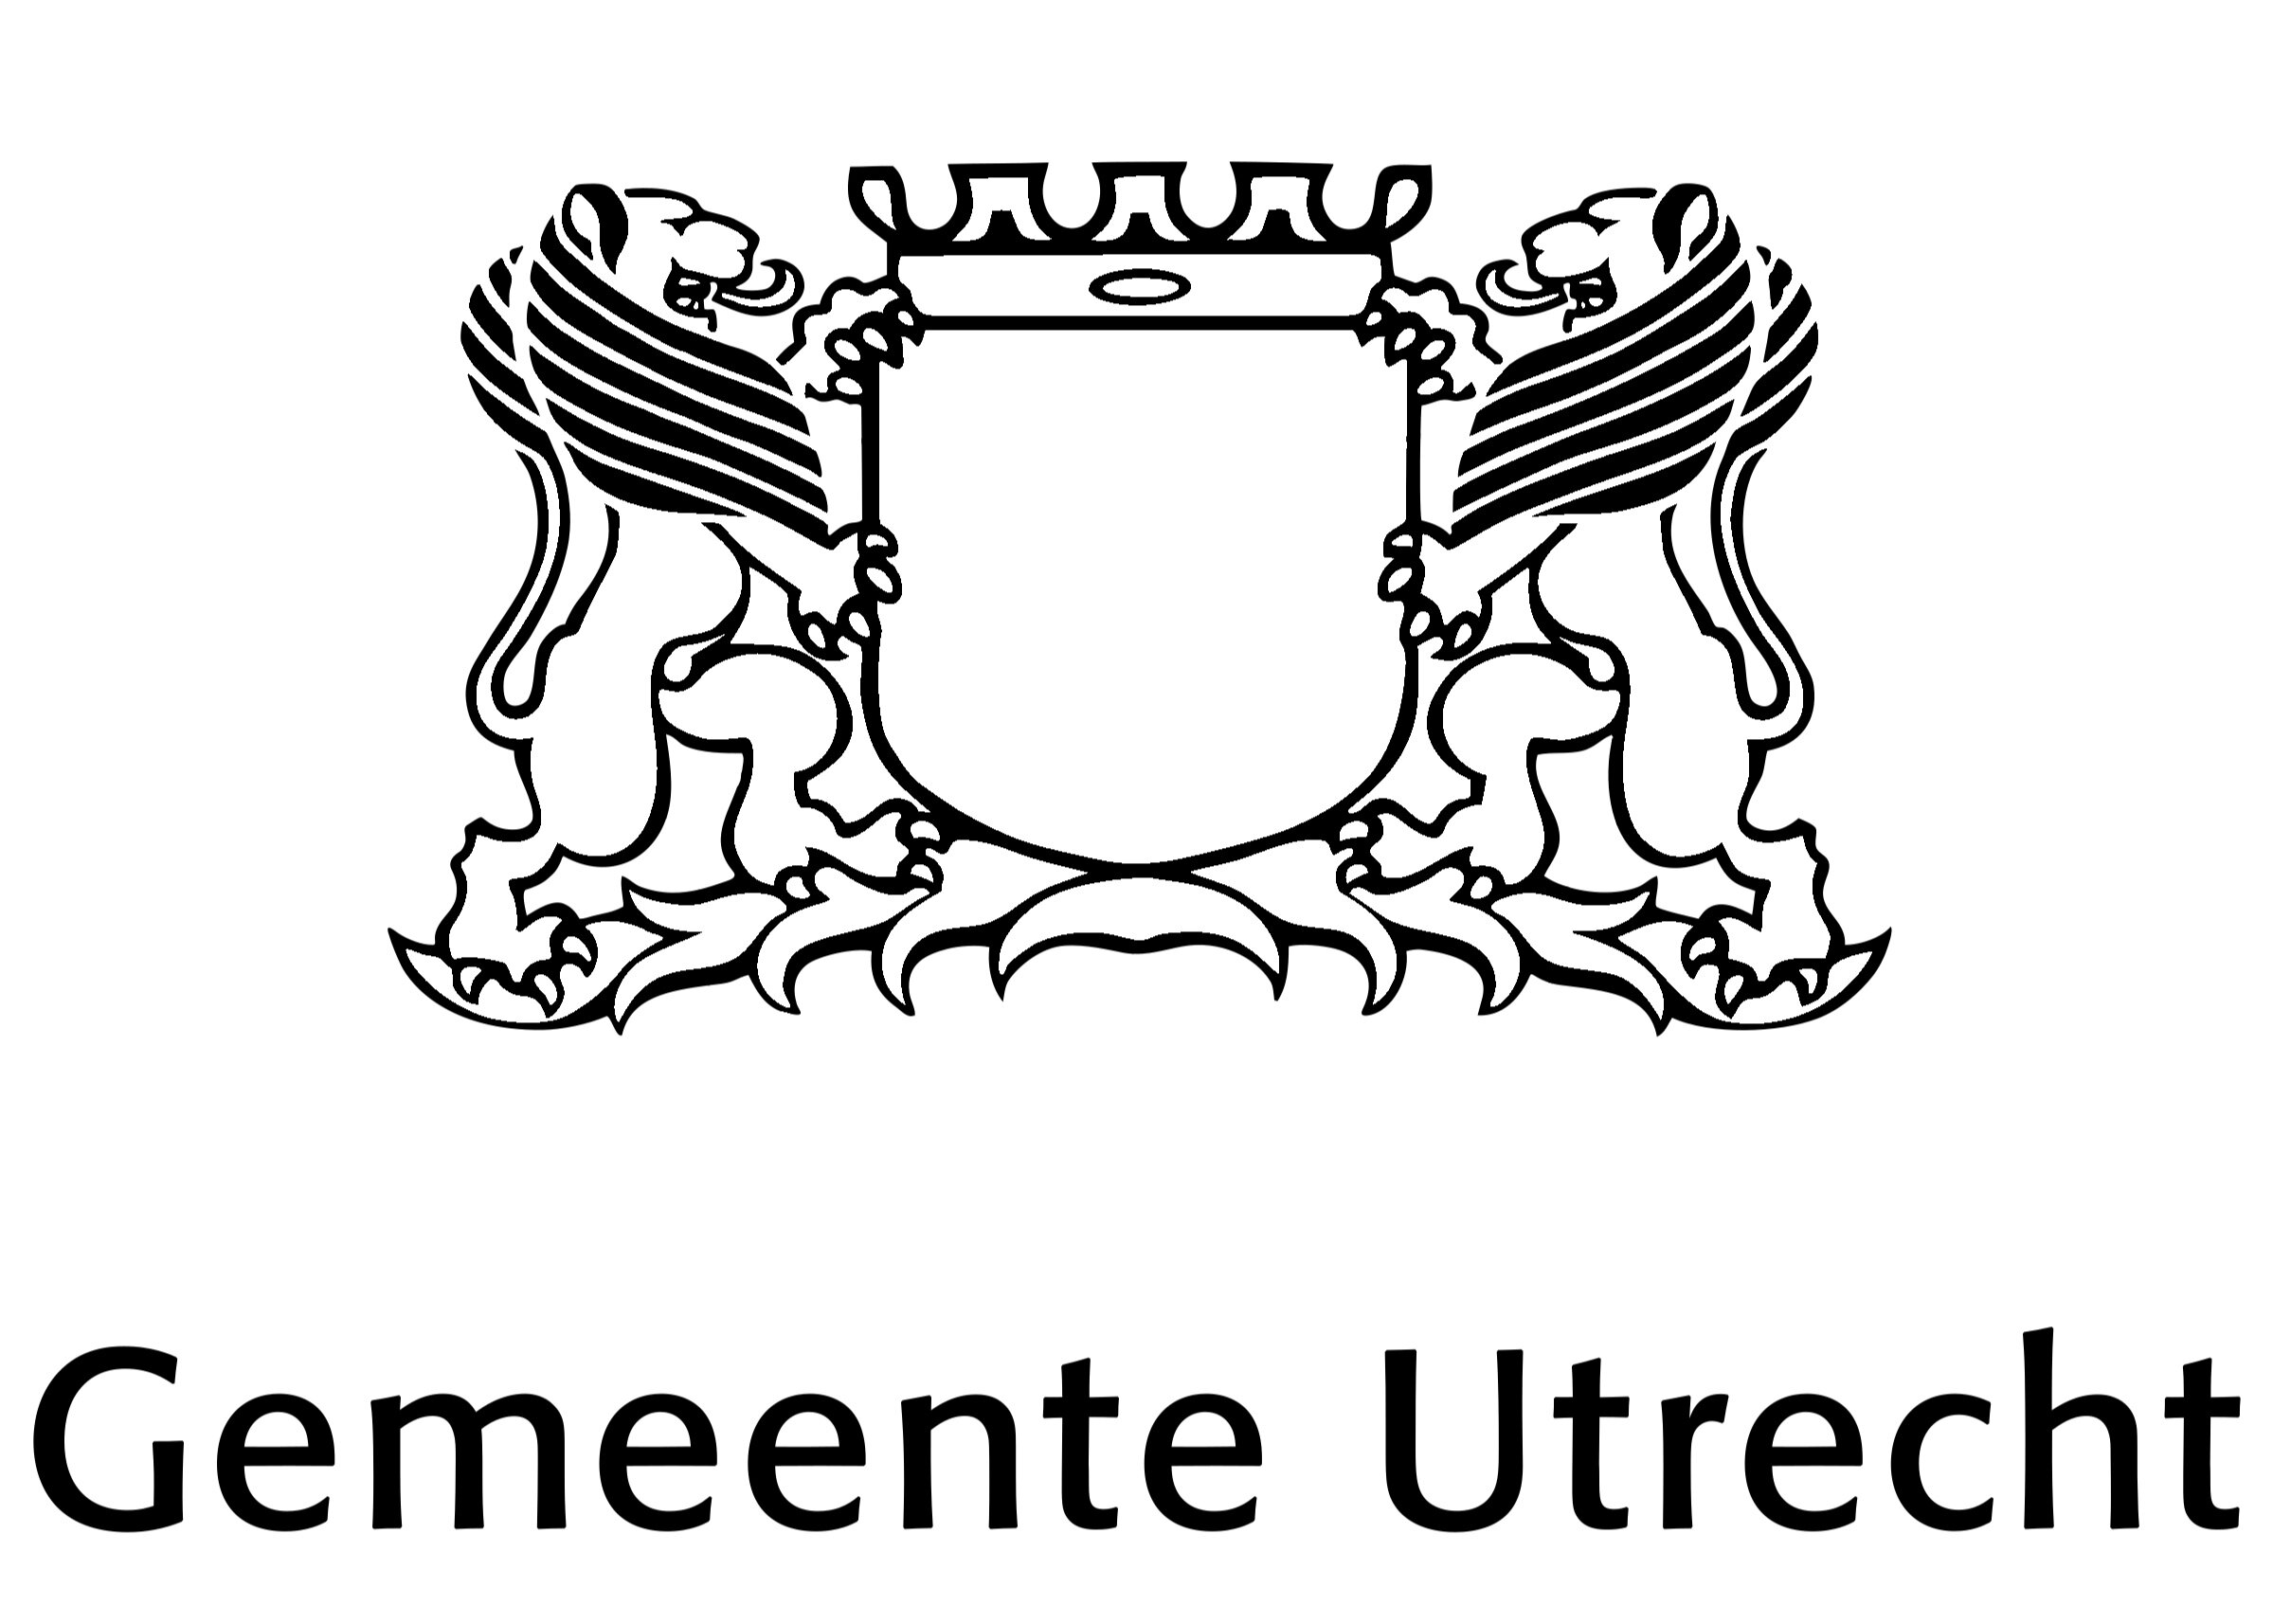 gemeente-utrecht-logo-black-and-white.jpg